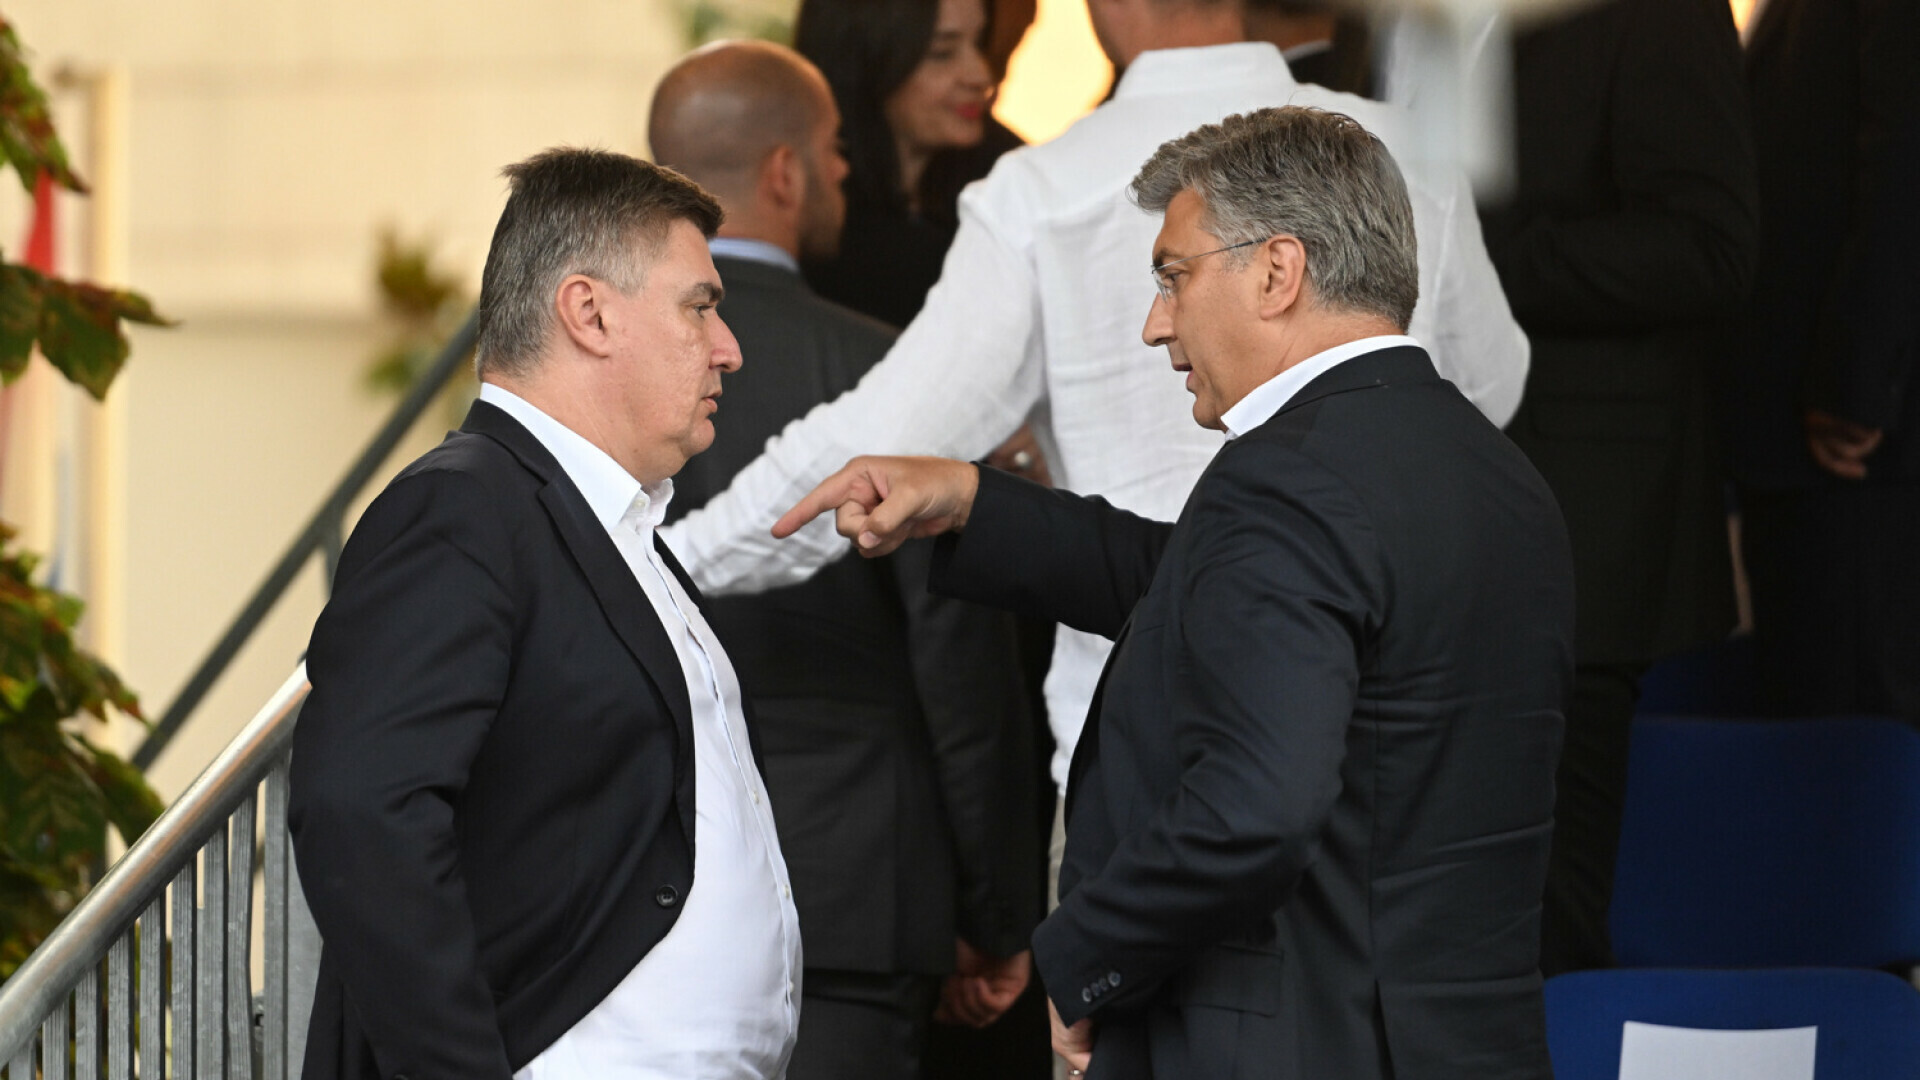 O čemu su razgovarali? Plenković i Milanović nakon dugog razdoblja prepirki i hrpe uvreda s obje strane